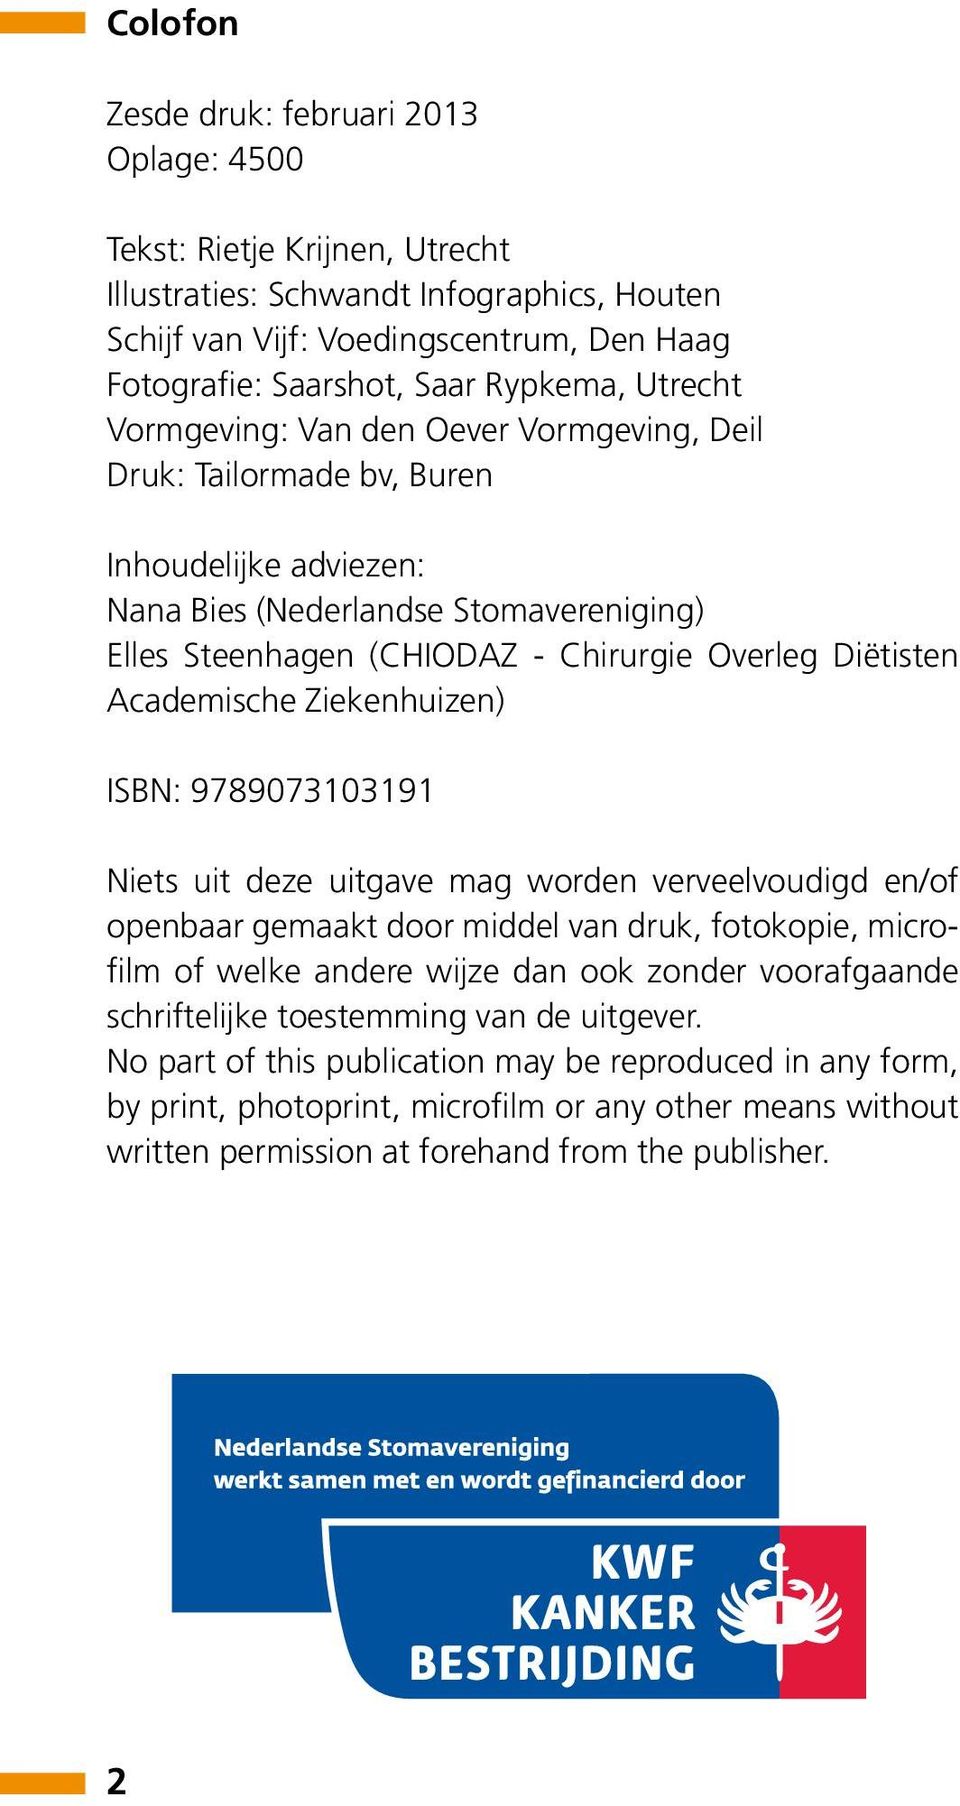 Diëtisten Academische Ziekenhuizen) ISBN: 9789073103191 Niets uit deze uitgave mag worden verveelvoudigd en/of openbaar gemaakt door middel van druk, fotokopie, microfilm of welke andere wijze dan